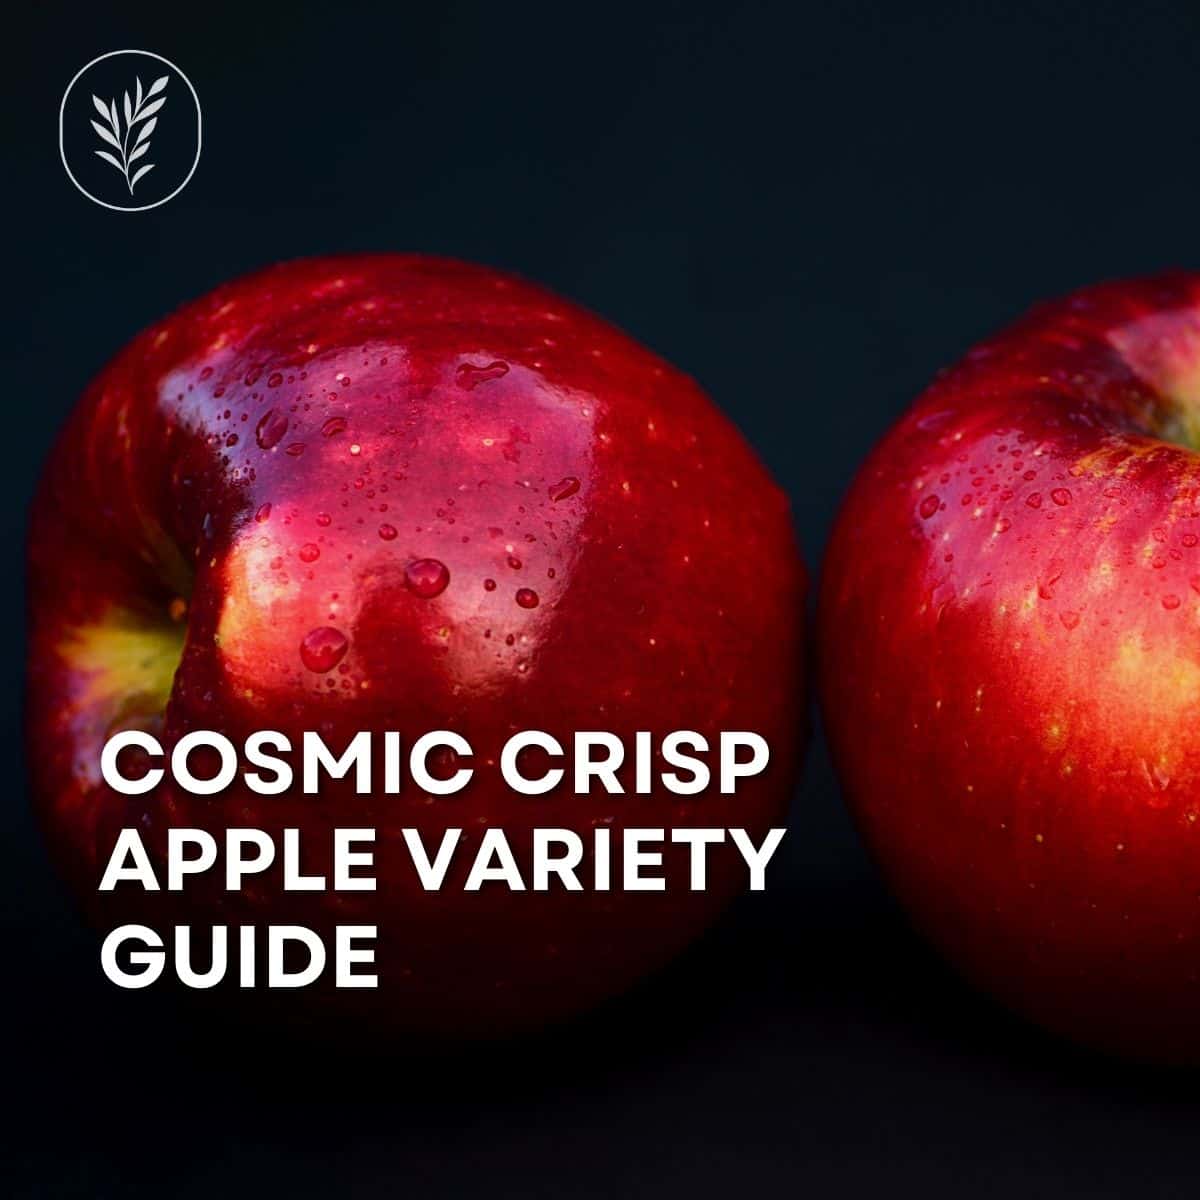 Cosmic crisp apple variety guide via @home4theharvest